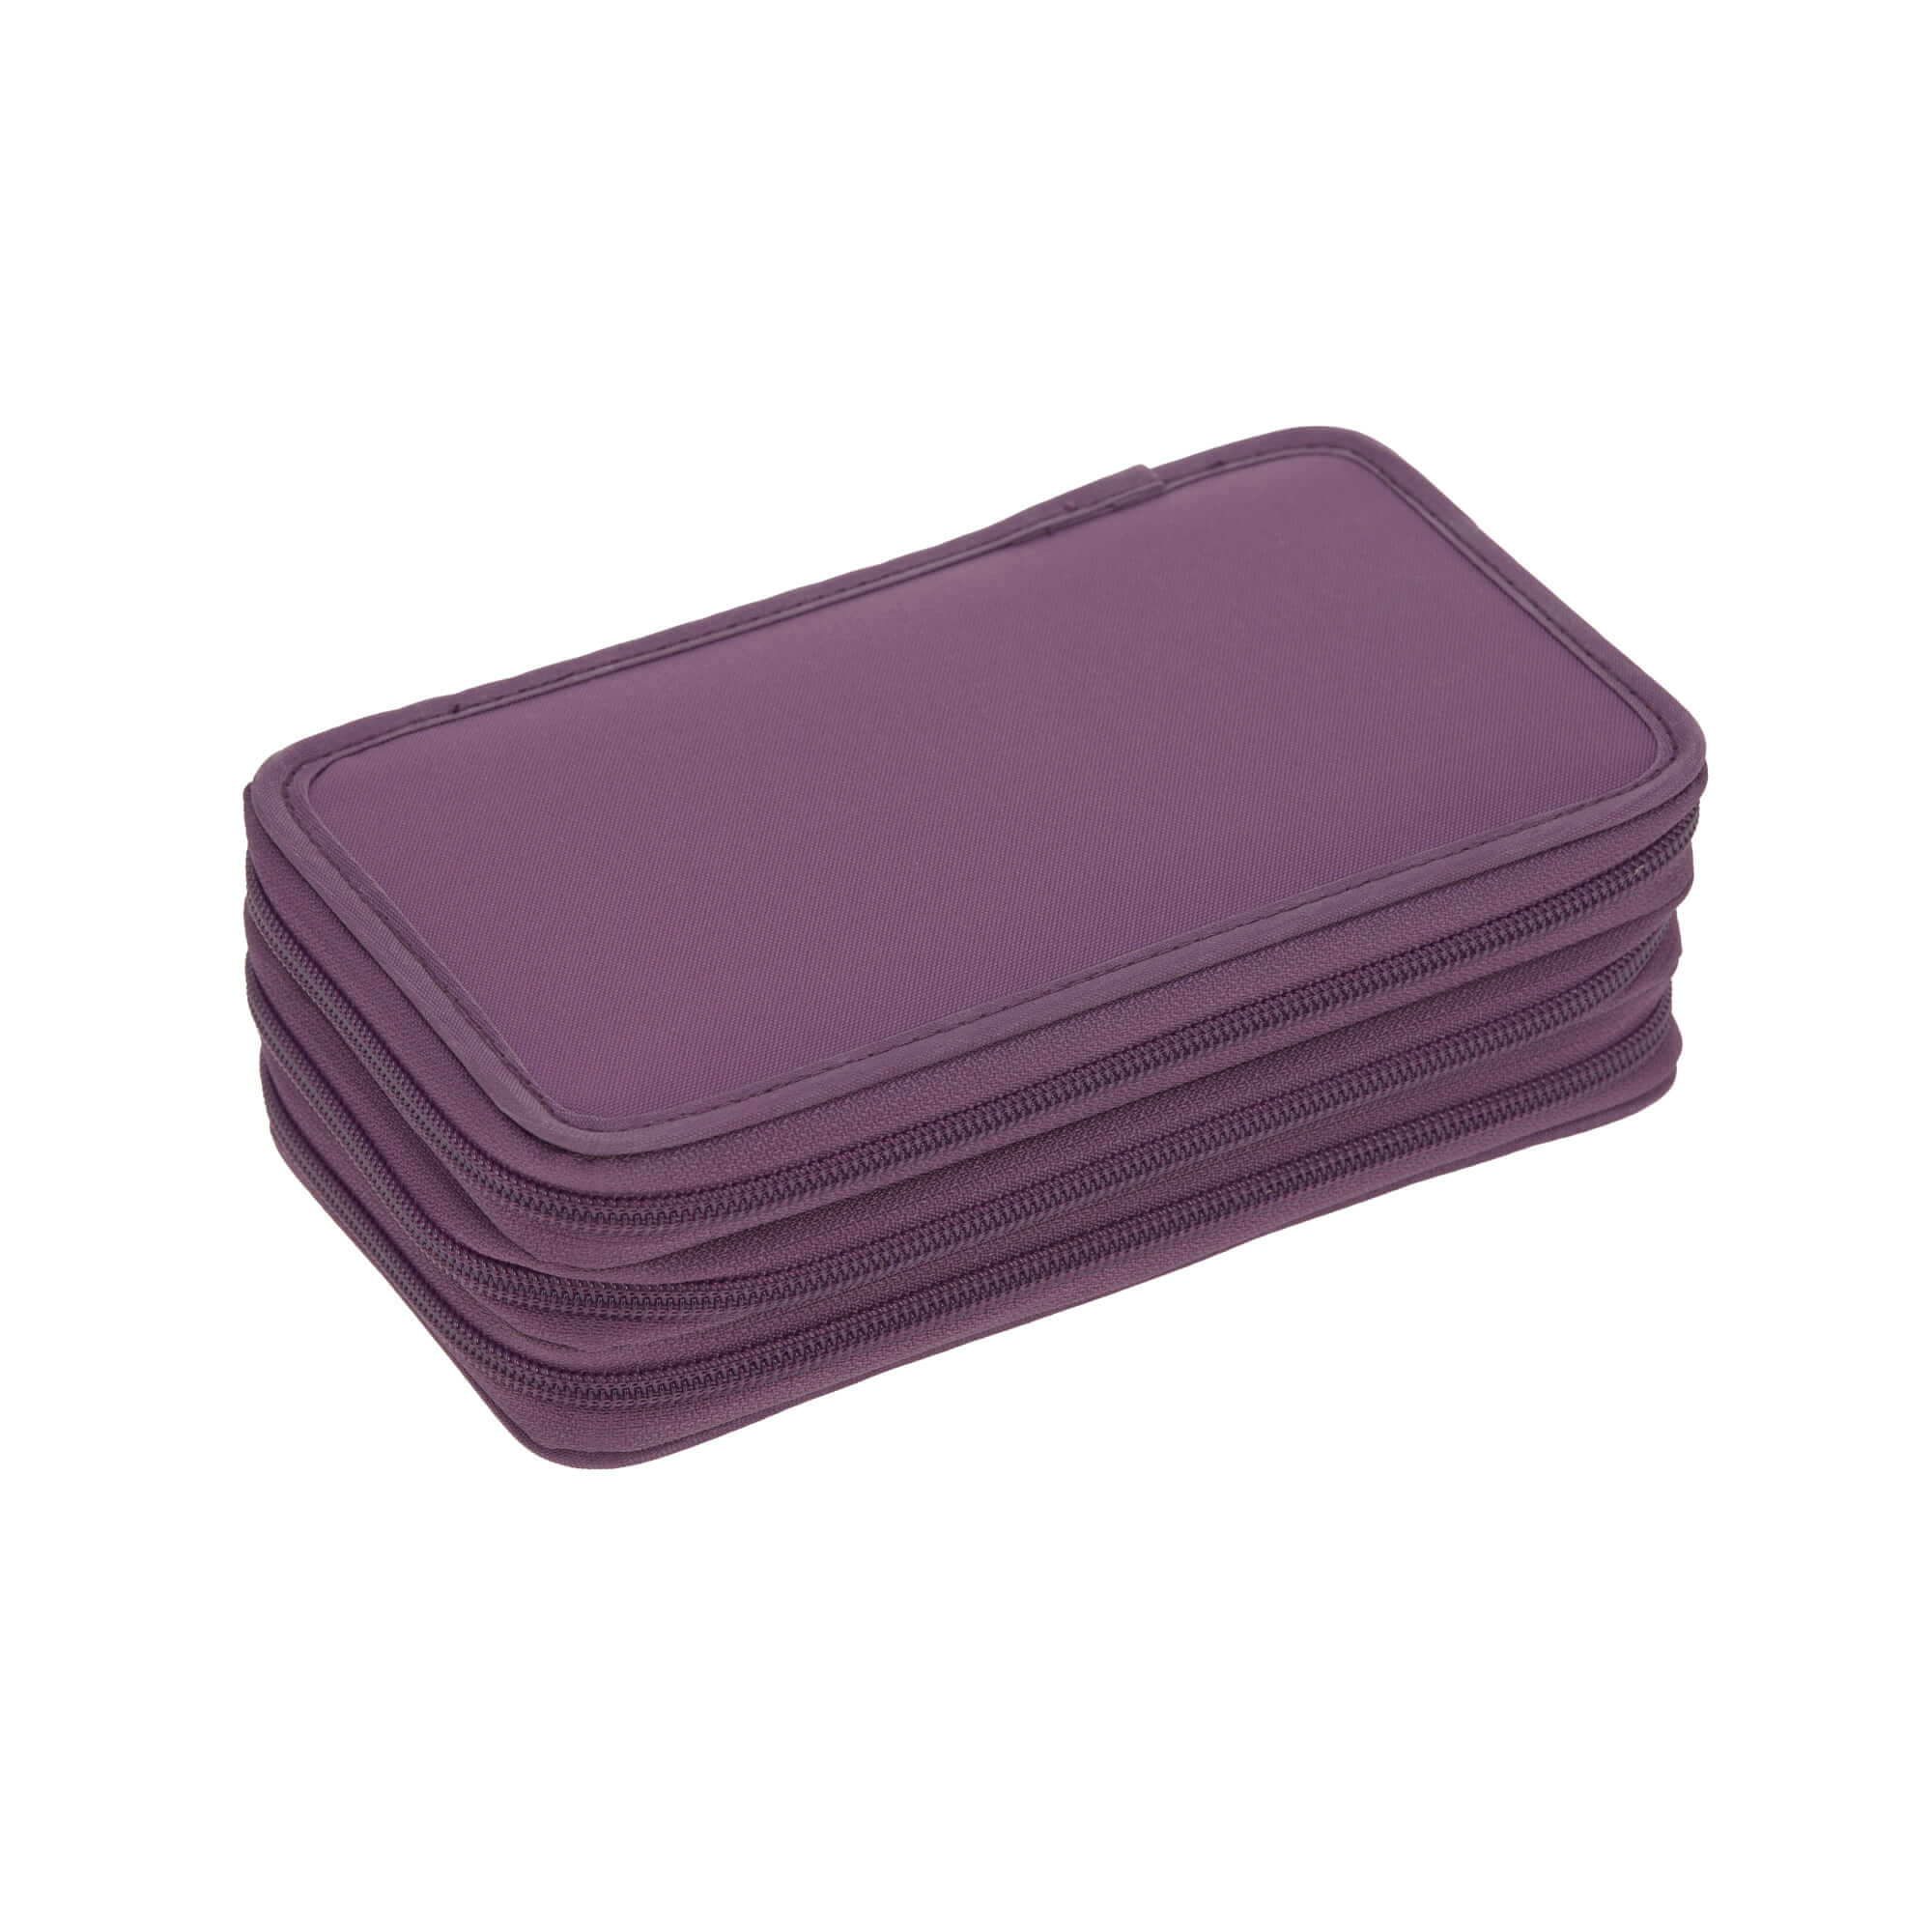 Lässig Federmäppchen 3 fach Purple günstig kaufen im Online Shop | Federmäppchen